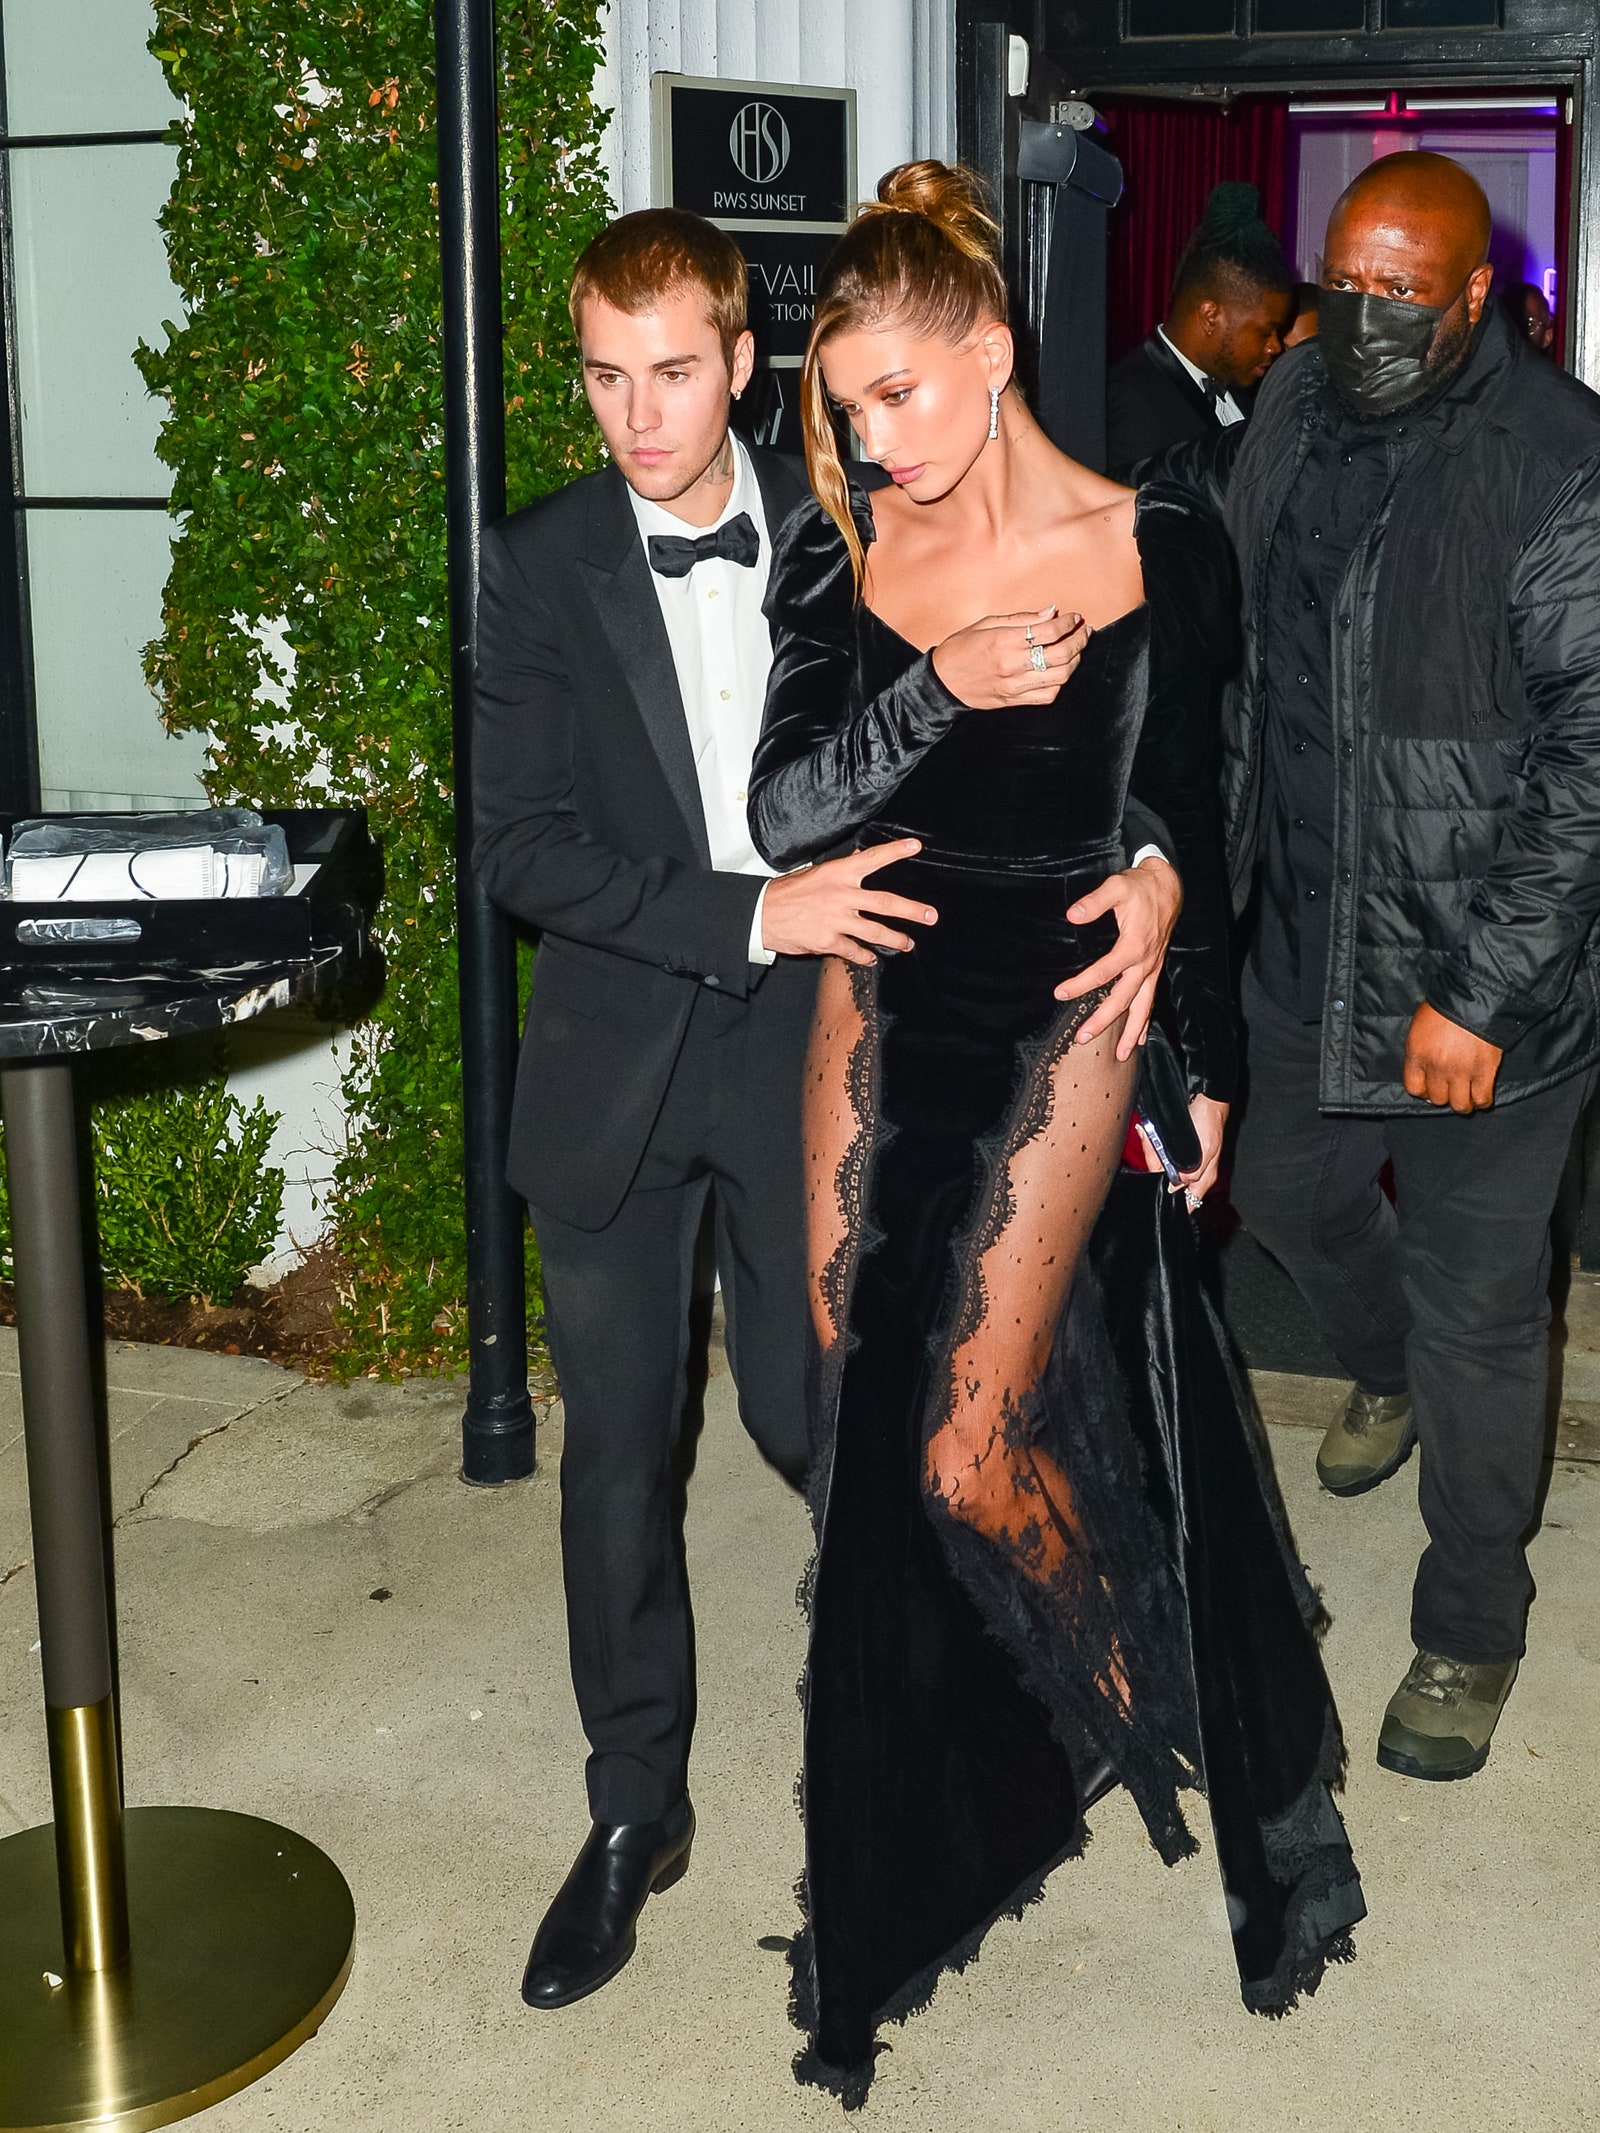 Khi xuất hiện cùng vợ, Hailey Bieber, anh chàng thường chọn những trang phục thanh lịch hơn nhưng khồng hề có cảm giác truyền thống và nhàm chán.